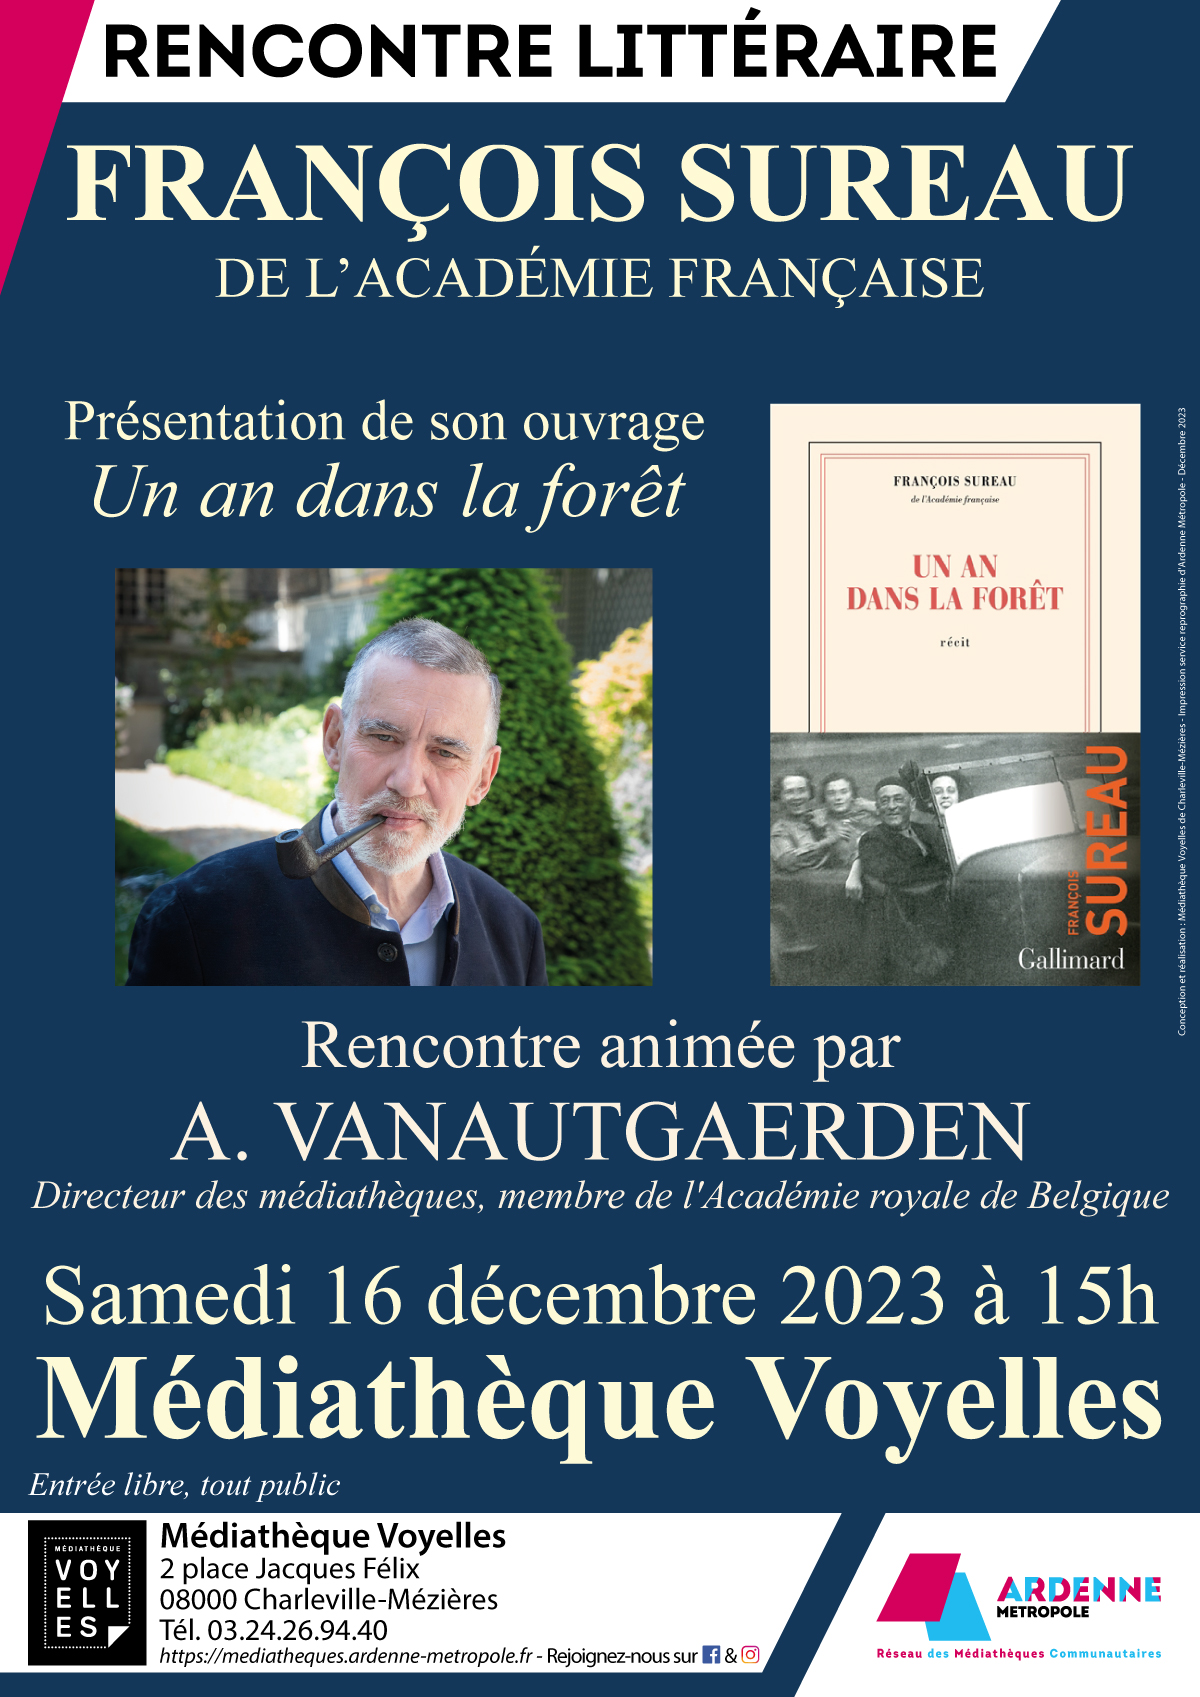 Rencontre litteraire Francois Sureau v2